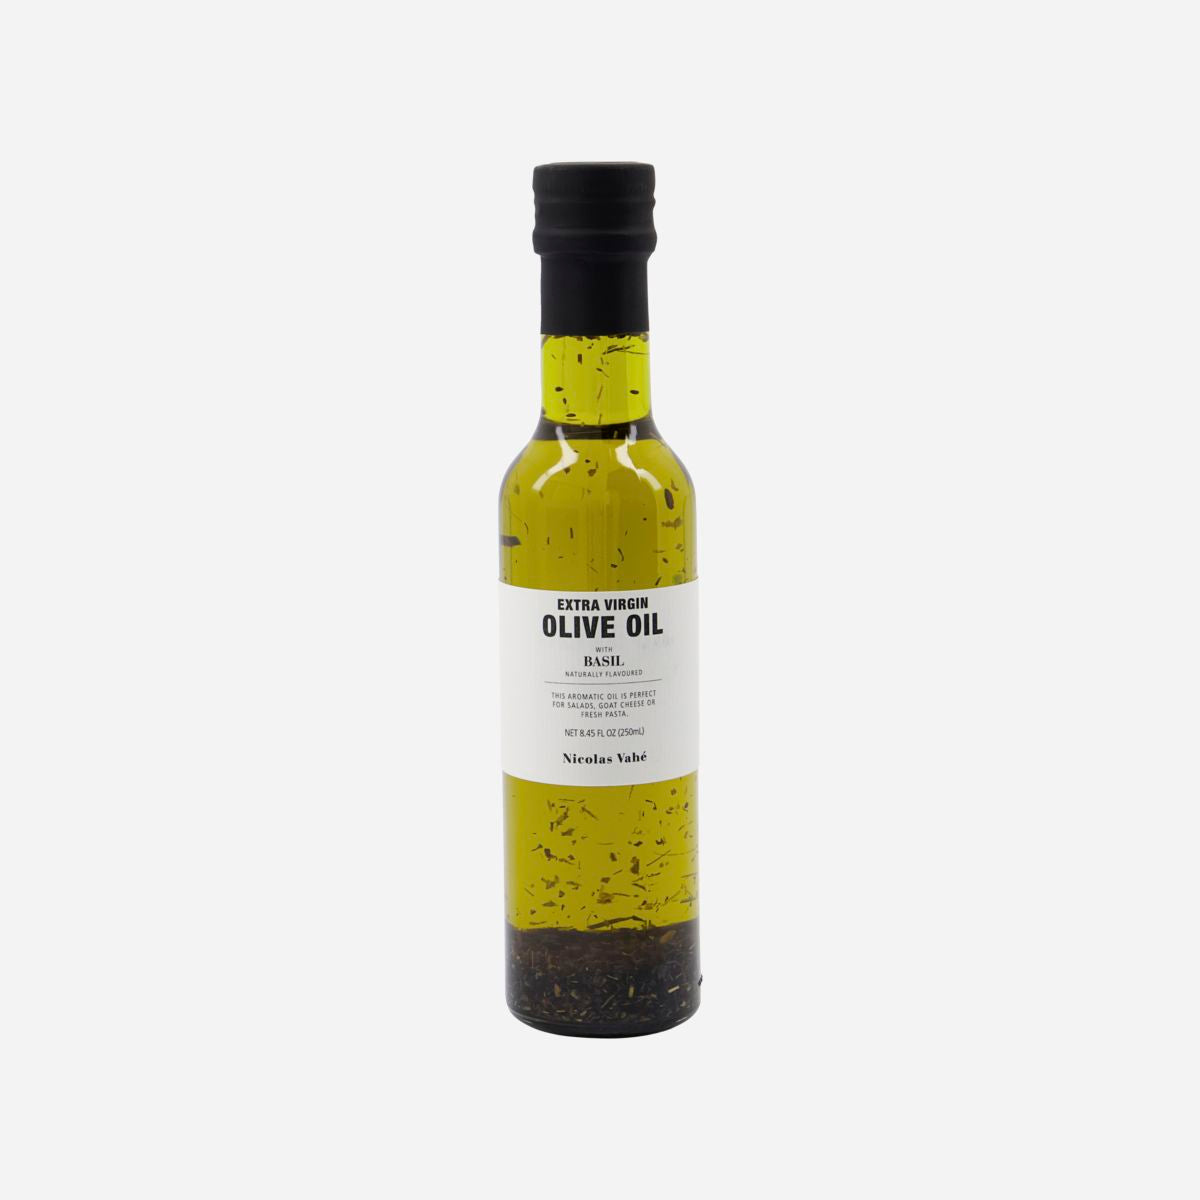 Nicolas Vahé Extra Virgin Olive Oil, with Basil